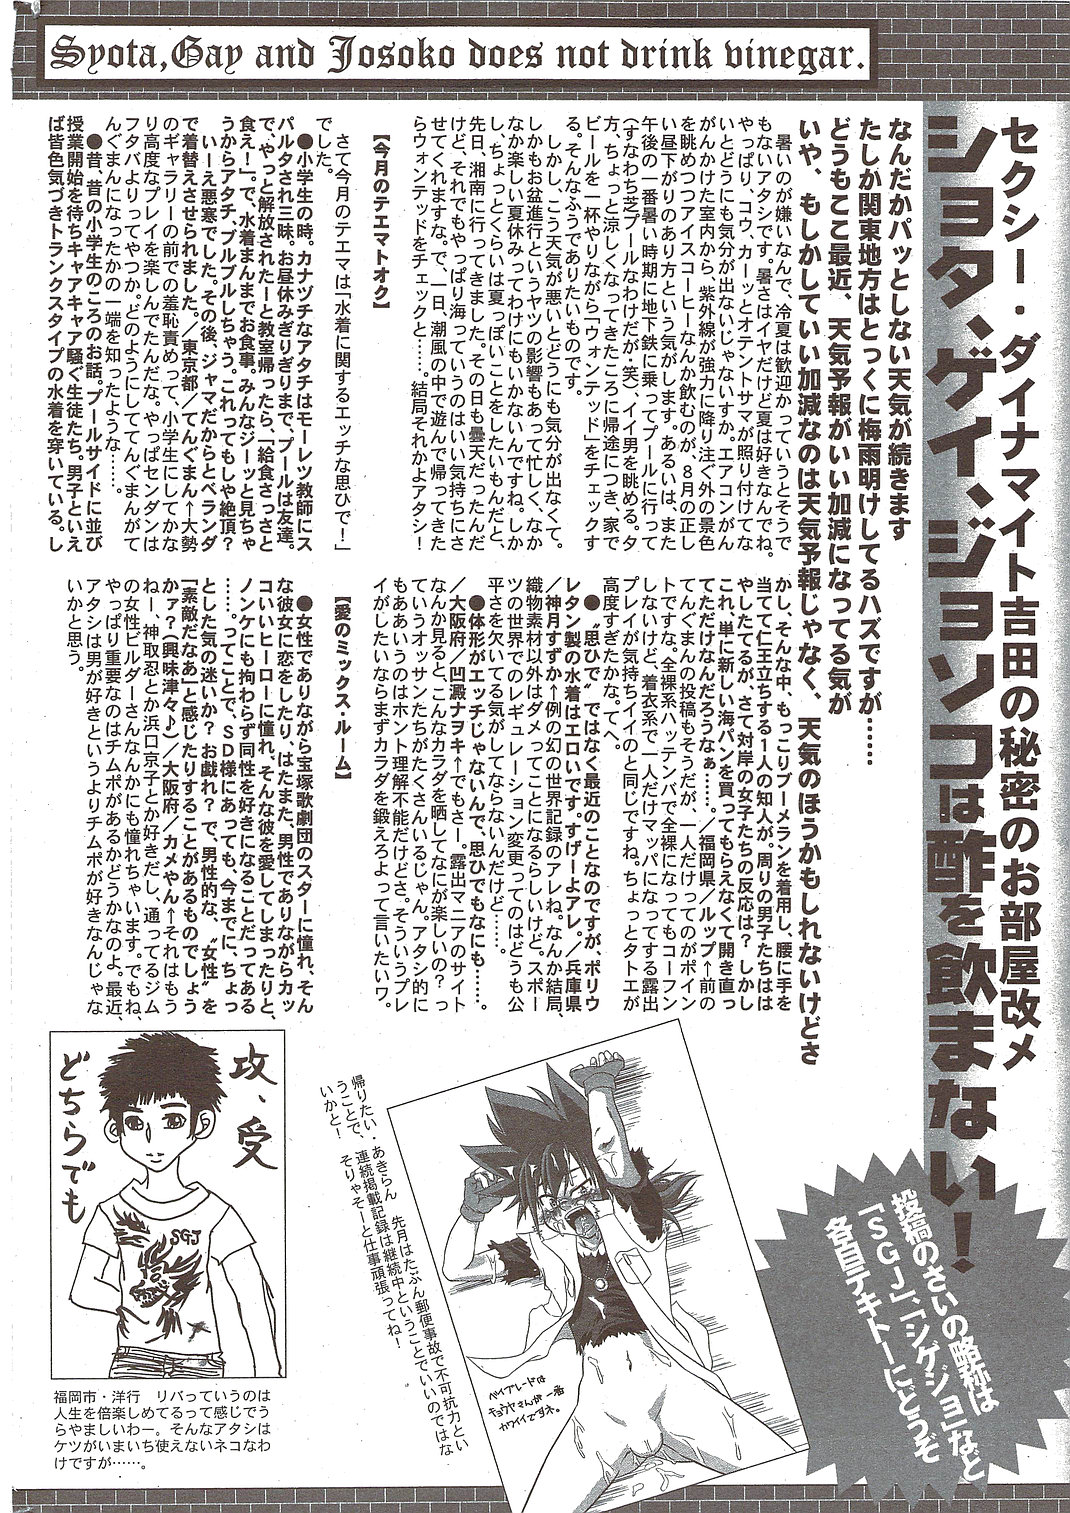 Manga Bangaichi 2009-10 漫画ばんがいち 2009年10月号